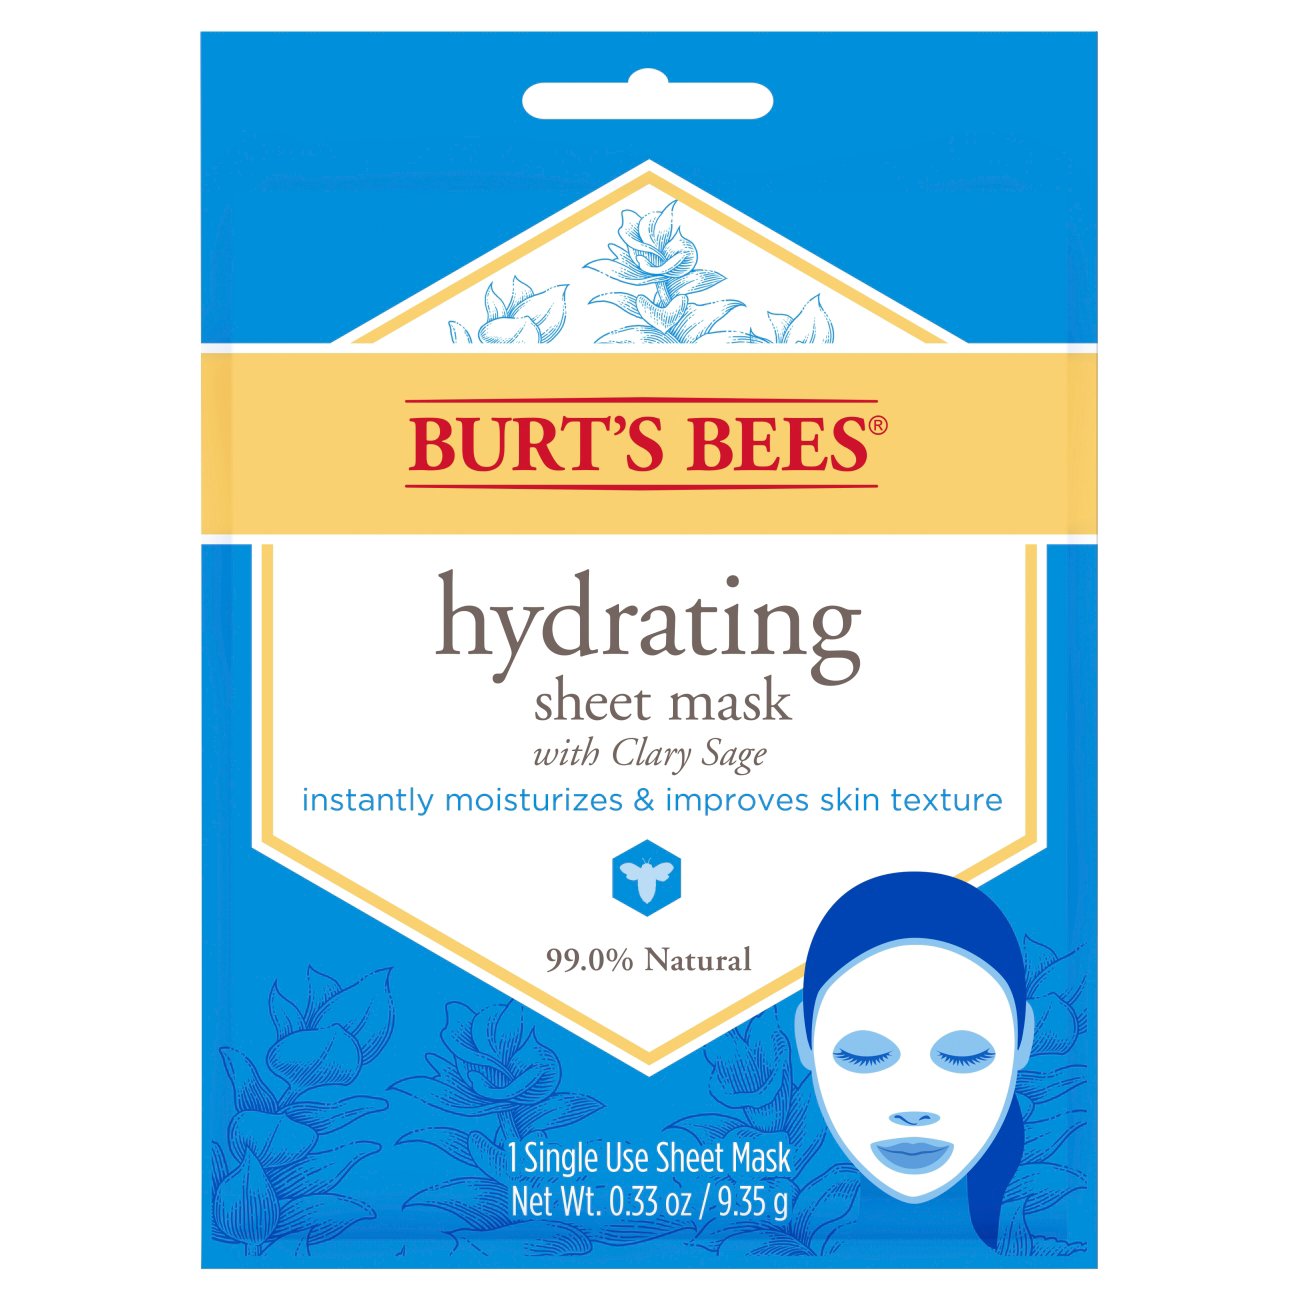 Burt's Bees Hydrating Face Sheet Mask - Shop Masks & Treatments at H-E-B